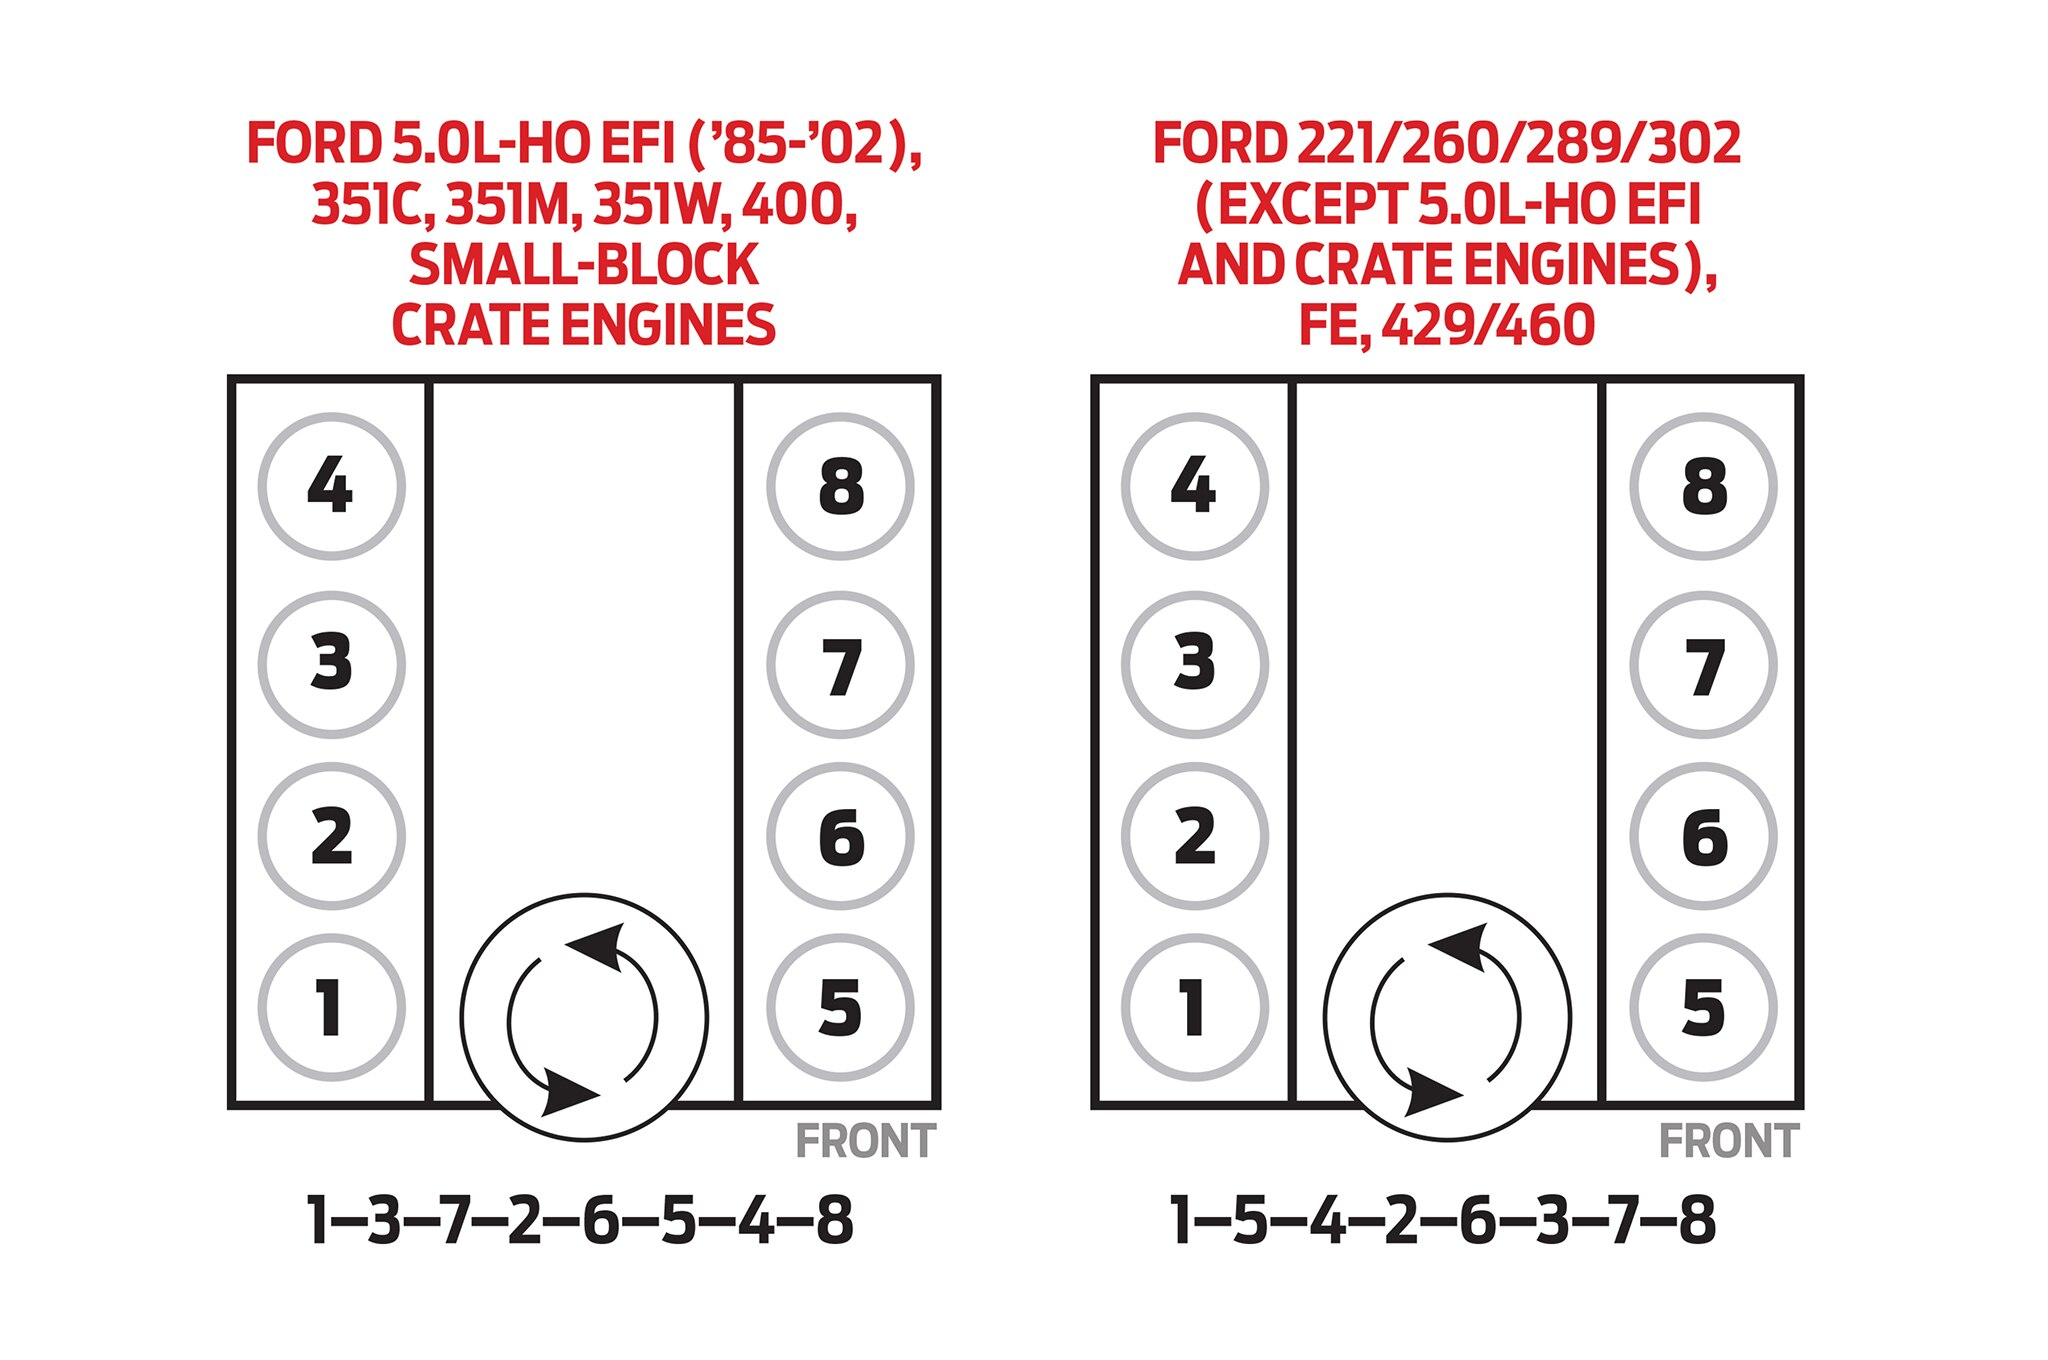 Hd_2547] Chevy S10 2 8 Engine Firing Order Schematic Wiring